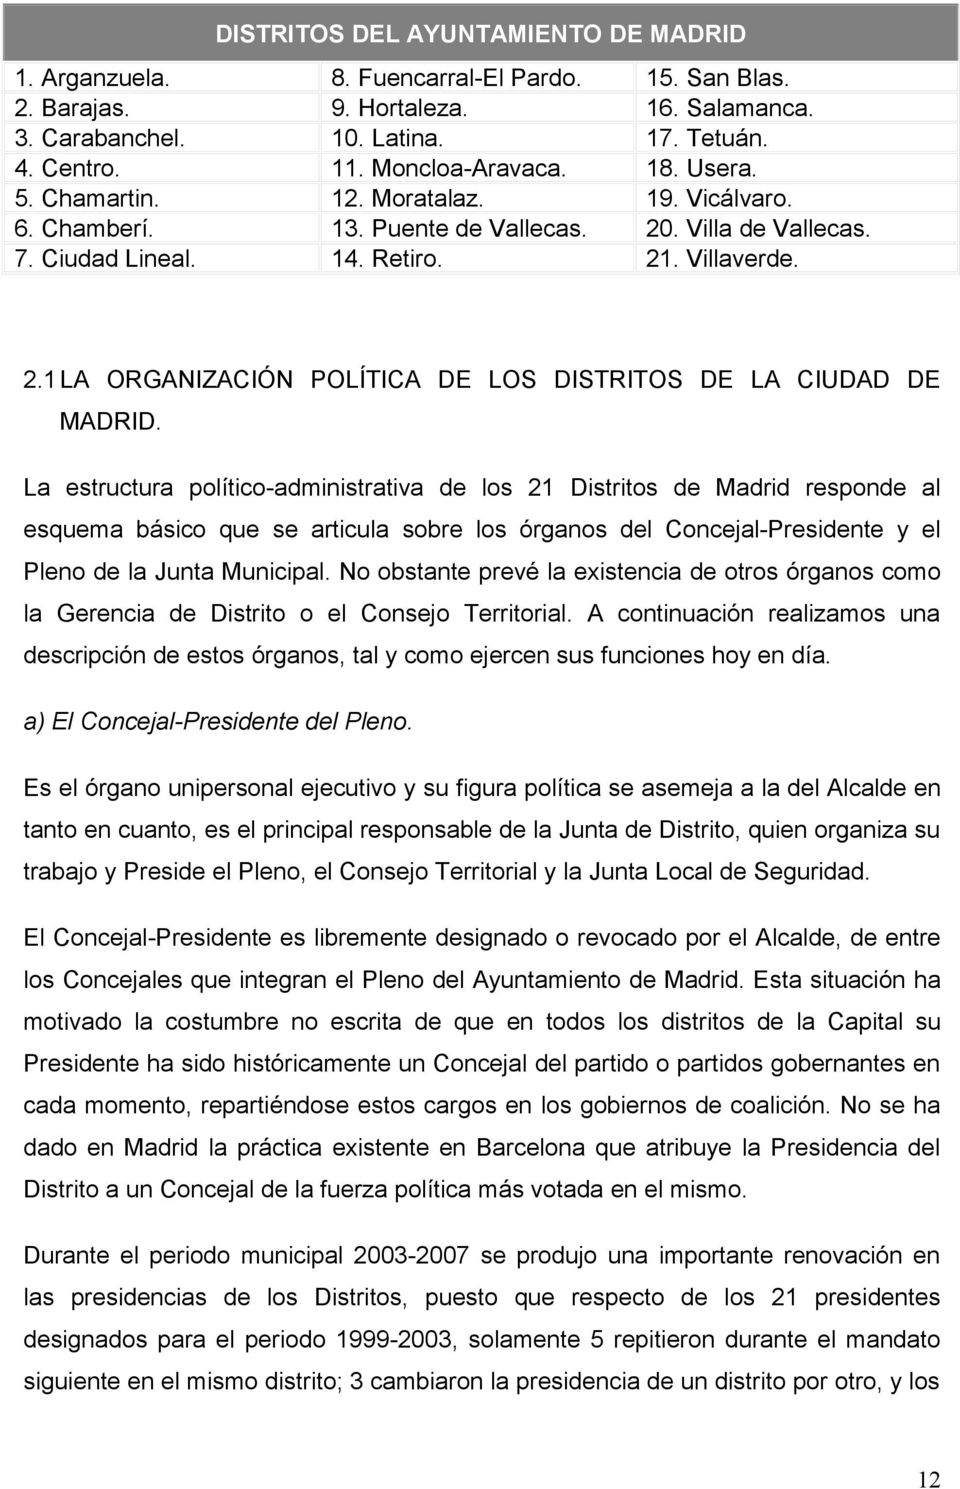 La estructura político-administrativa de los 21 Distritos de Madrid responde al esquema básico que se articula sobre los órganos del Concejal-Presidente y el Pleno de la Junta Municipal.